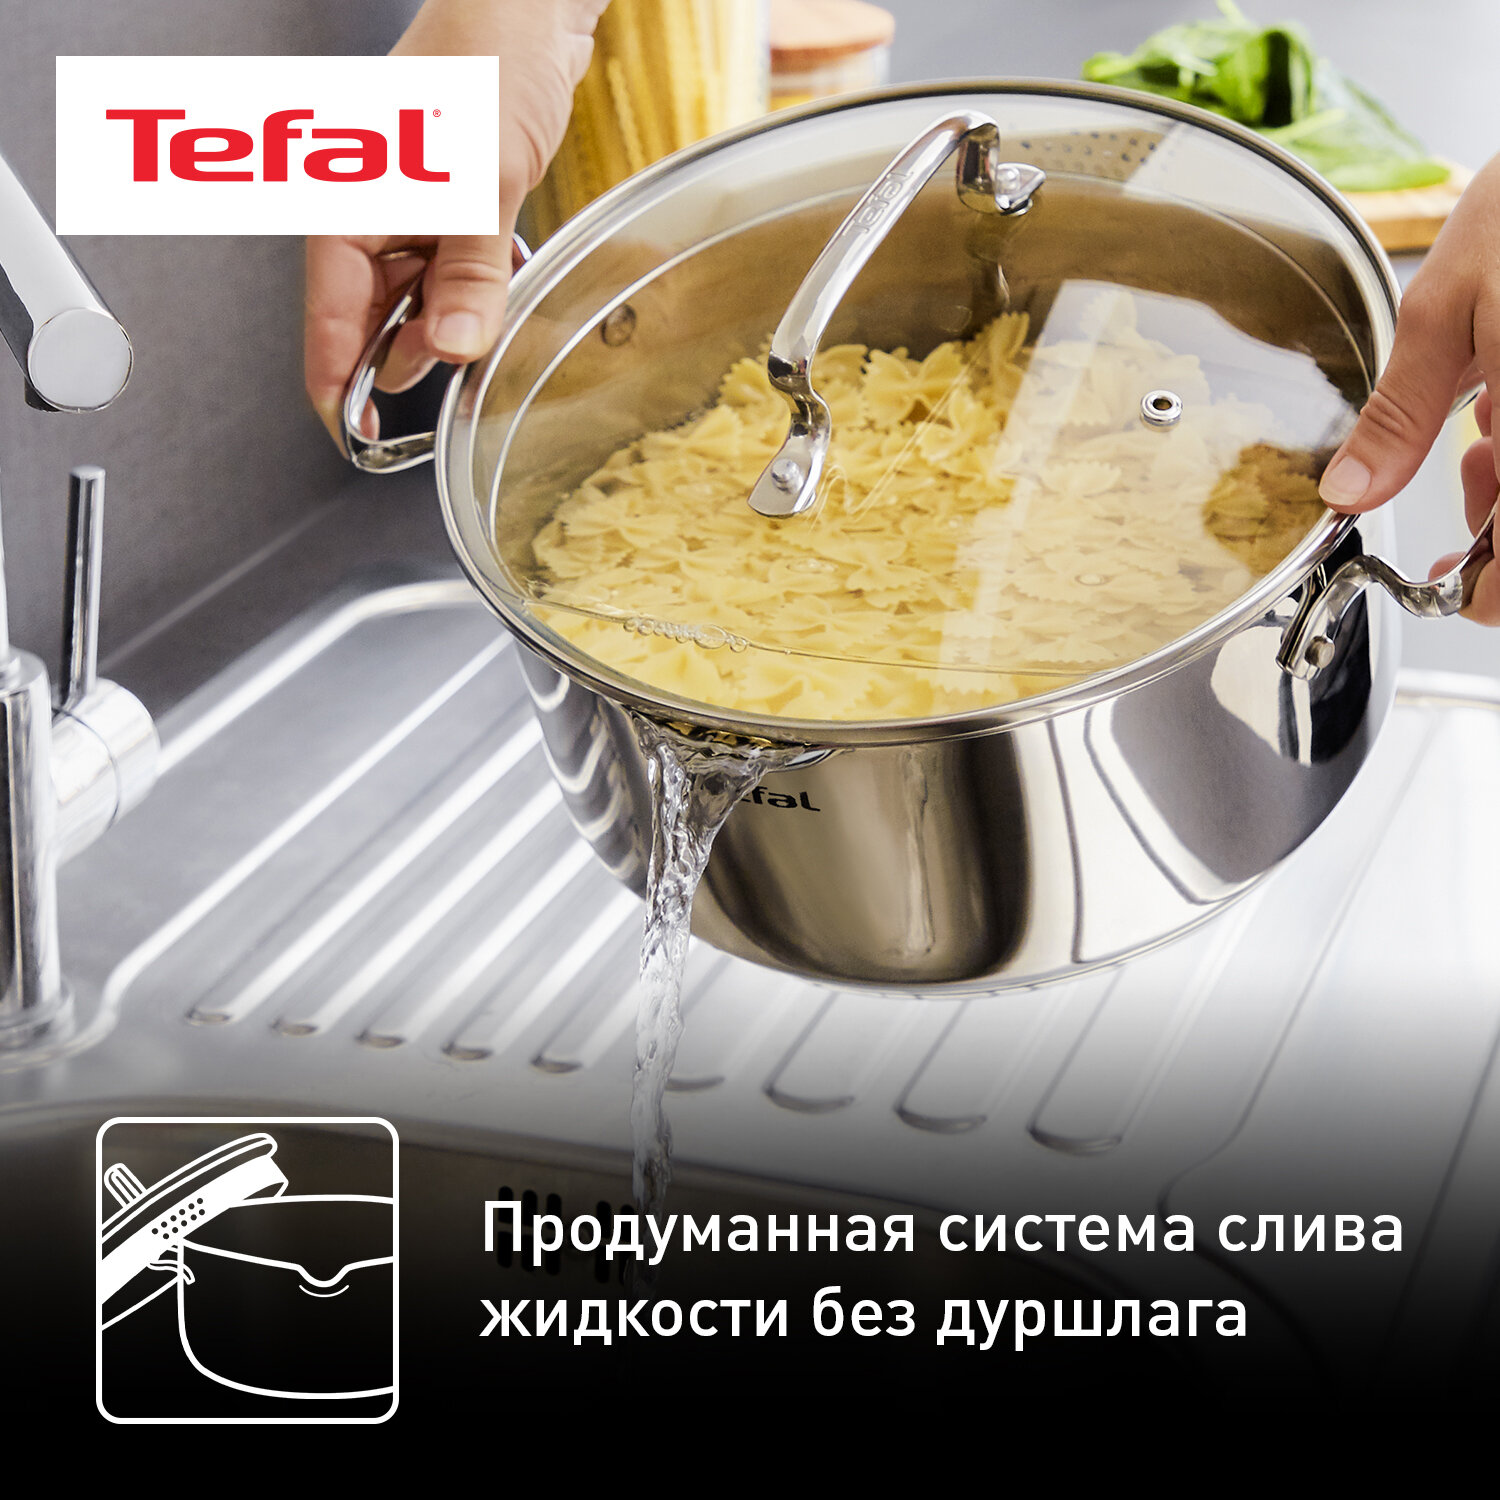 Набор посуды (нержавейка) Tefal - фото №3